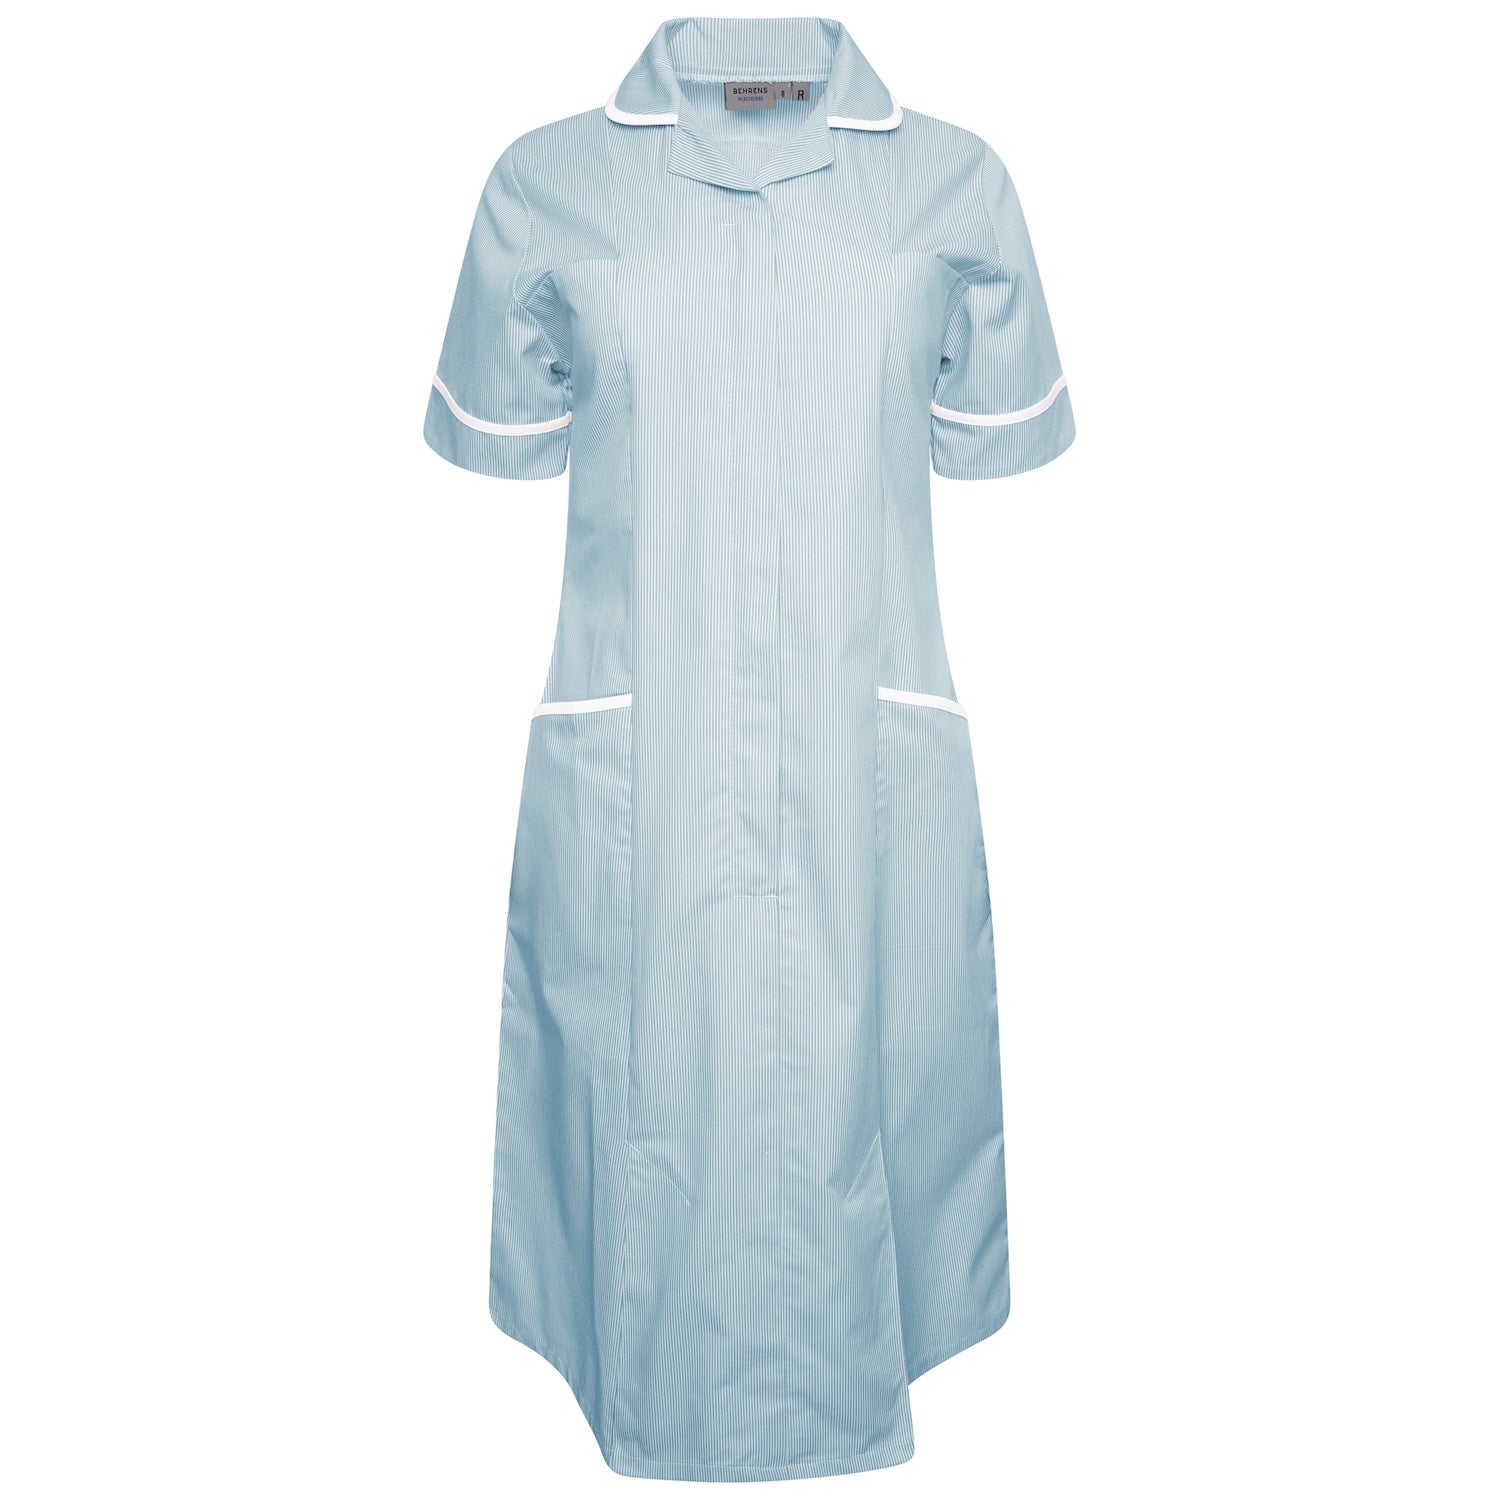 Ladies Healthcare Dress | Round Collar | Green White Stripe/White Trim